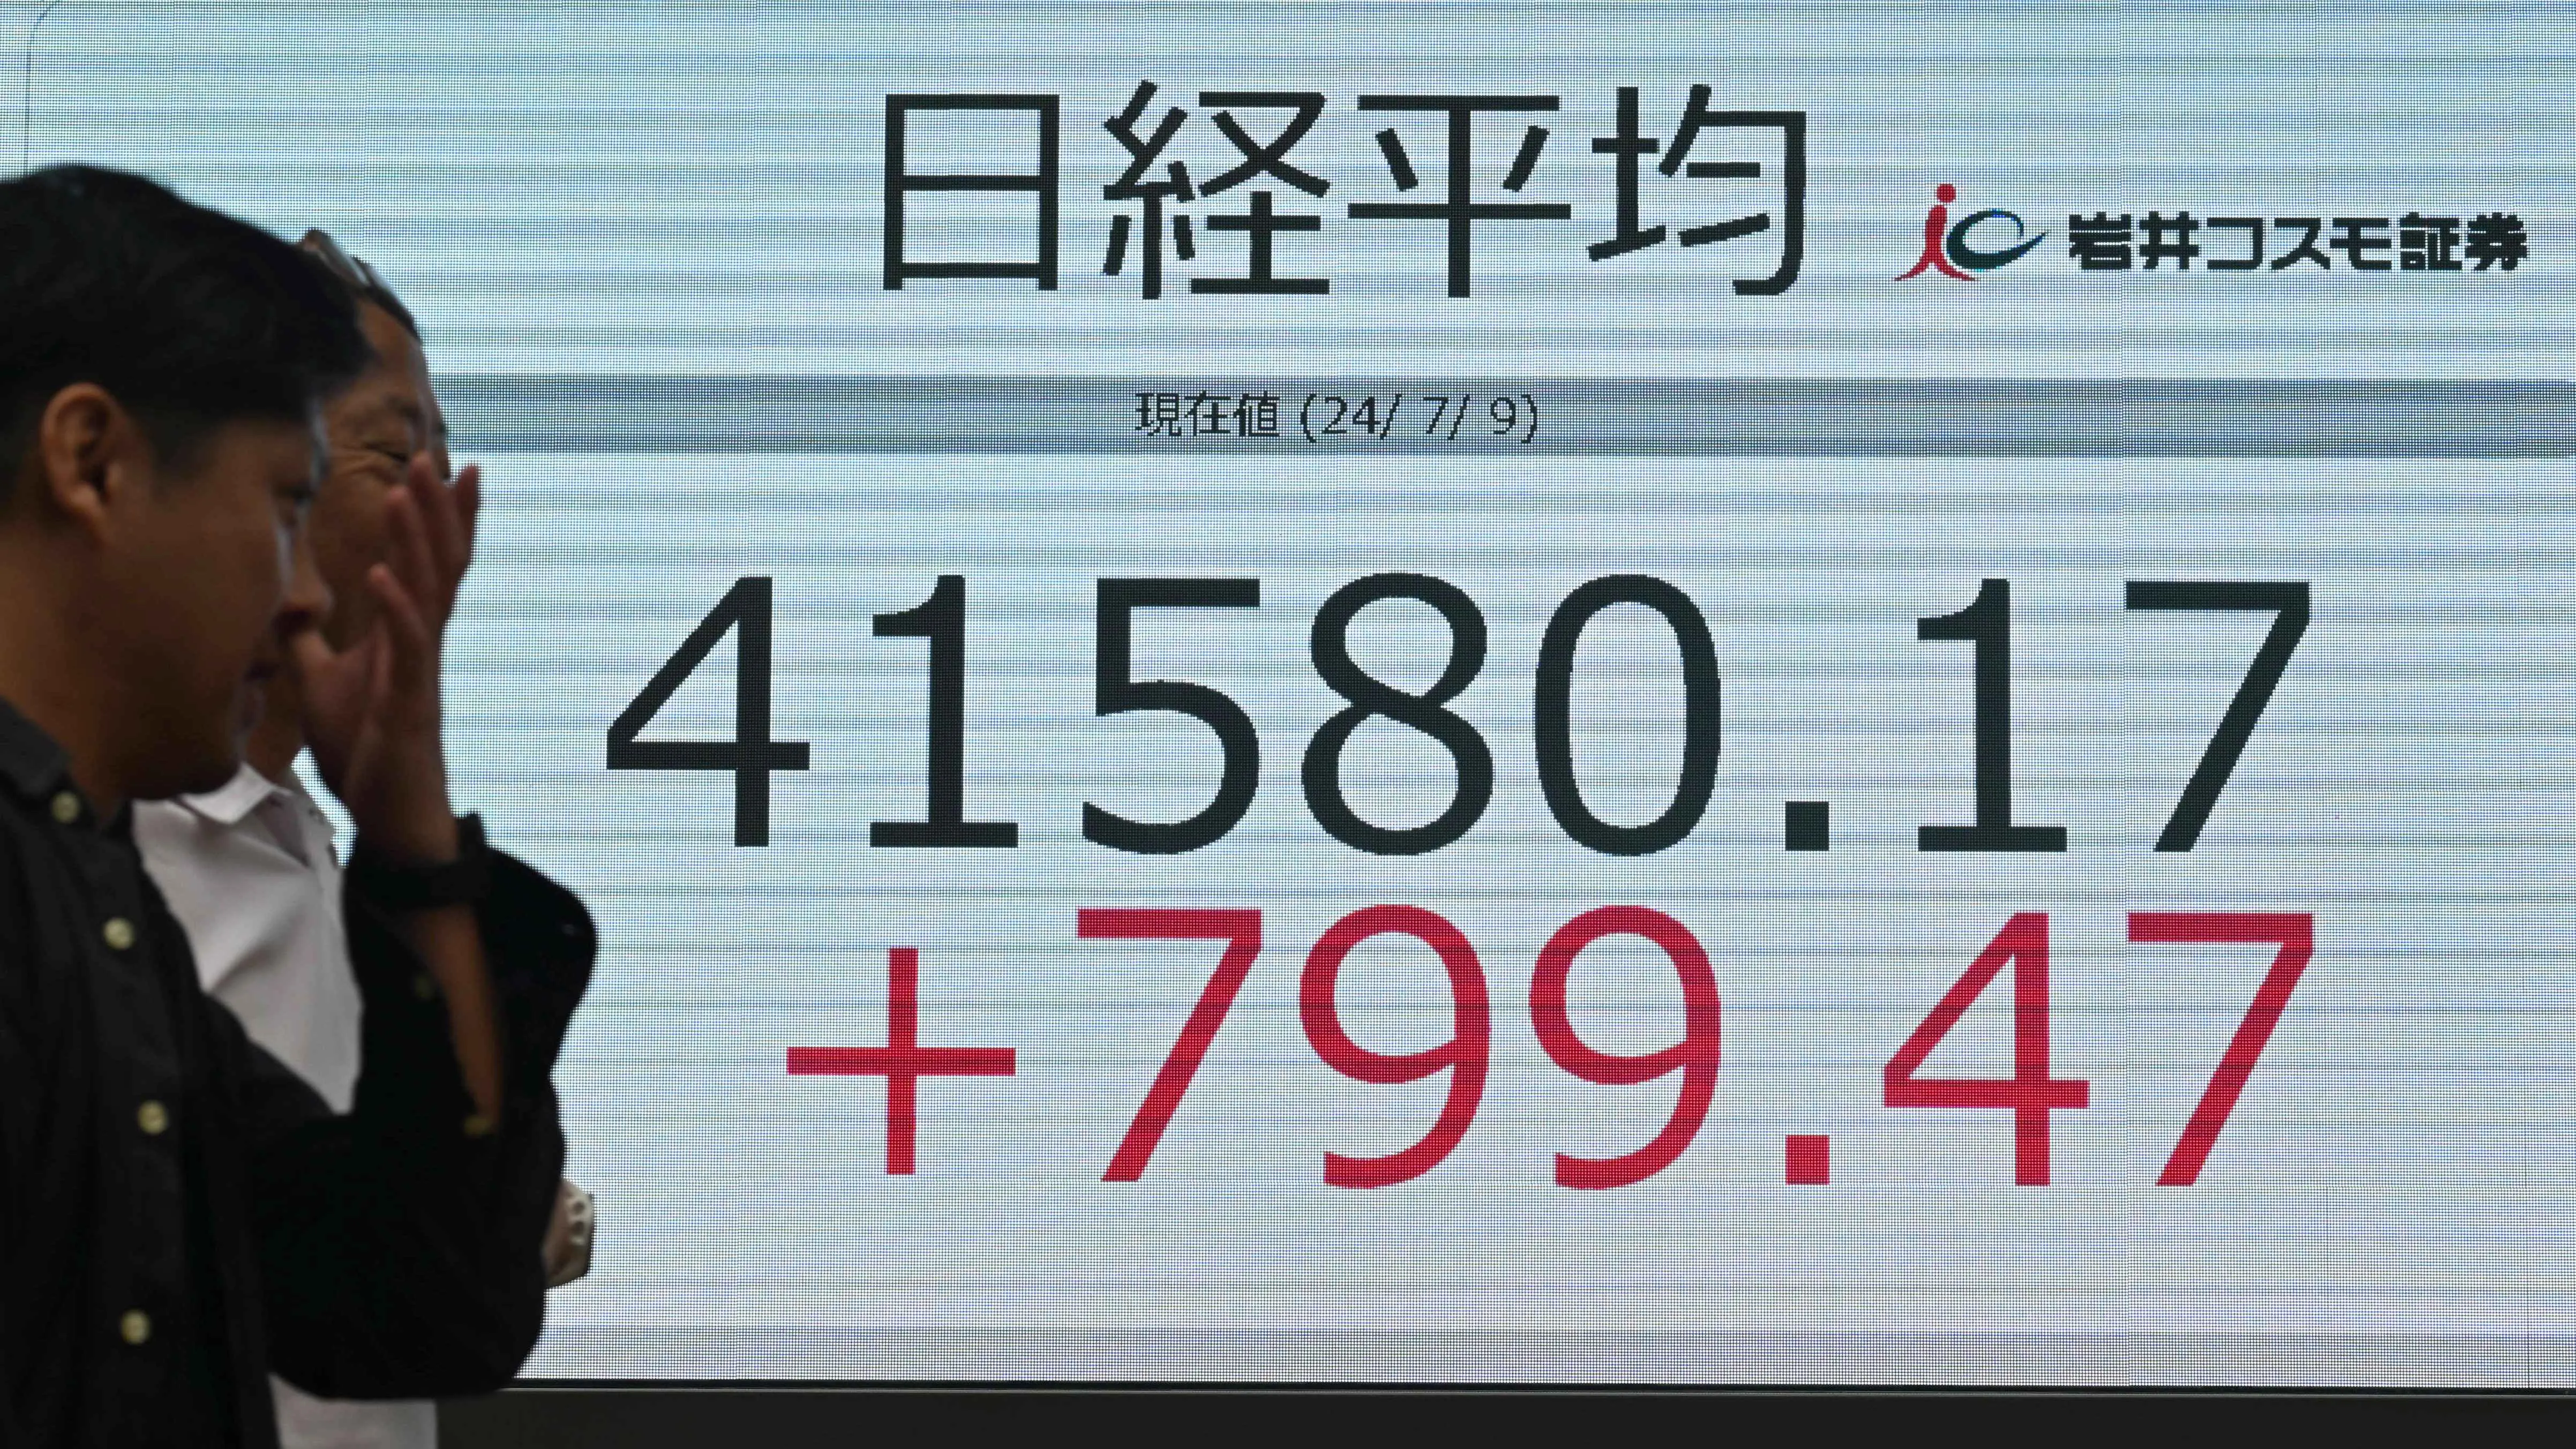 اليابان تلوّح بالتدخل في سوق الصرف وأسهم الصين تتجه للمنطقة الحمراء